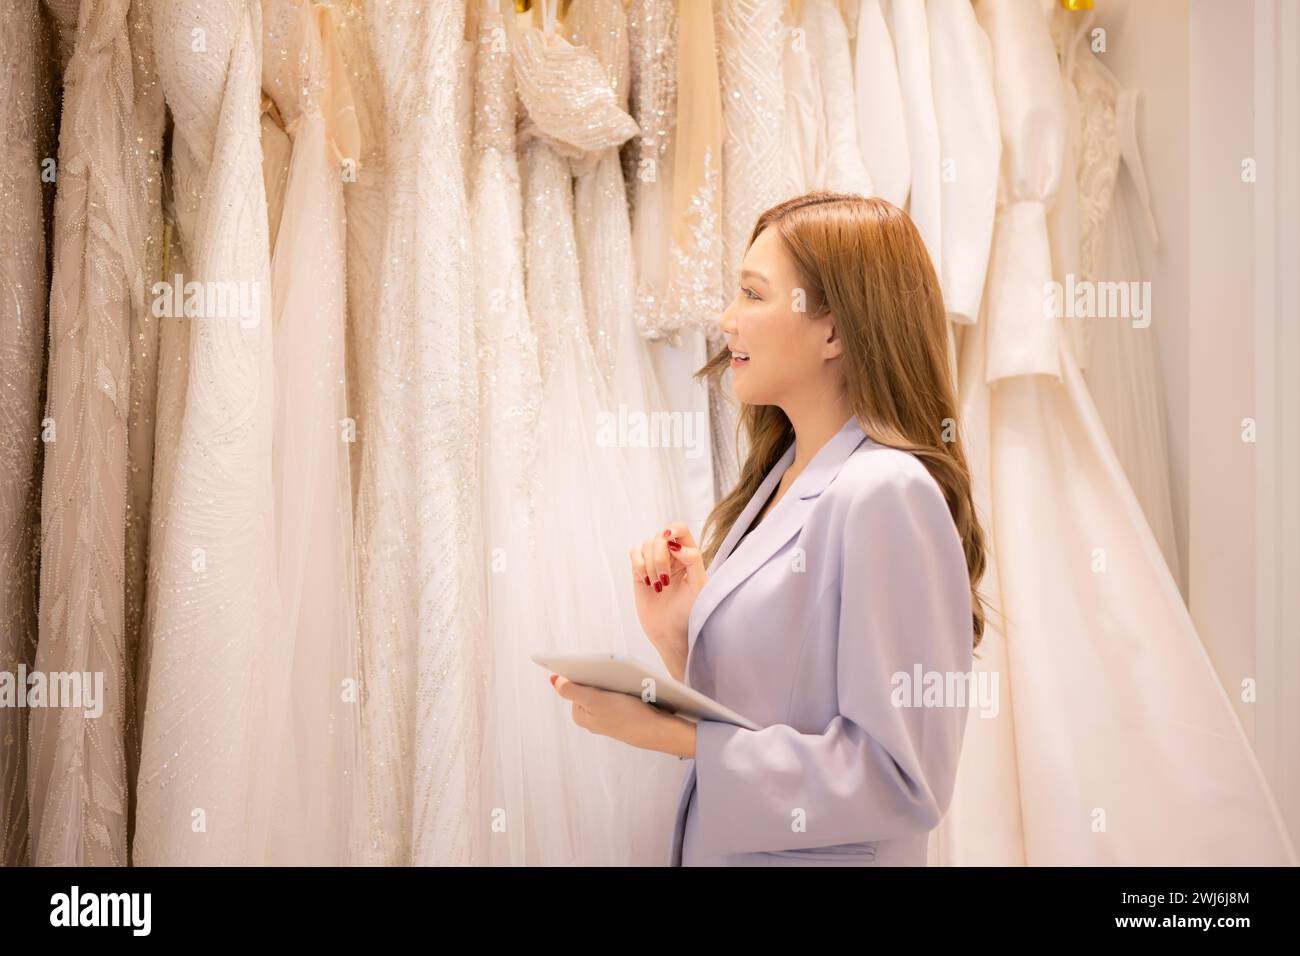 Der Ladenbesitzer ist Designer und Schneider. Wir überprüfen Brautkleider, die für Braut und Bräutigam zur Auswahl stehen Stockfoto